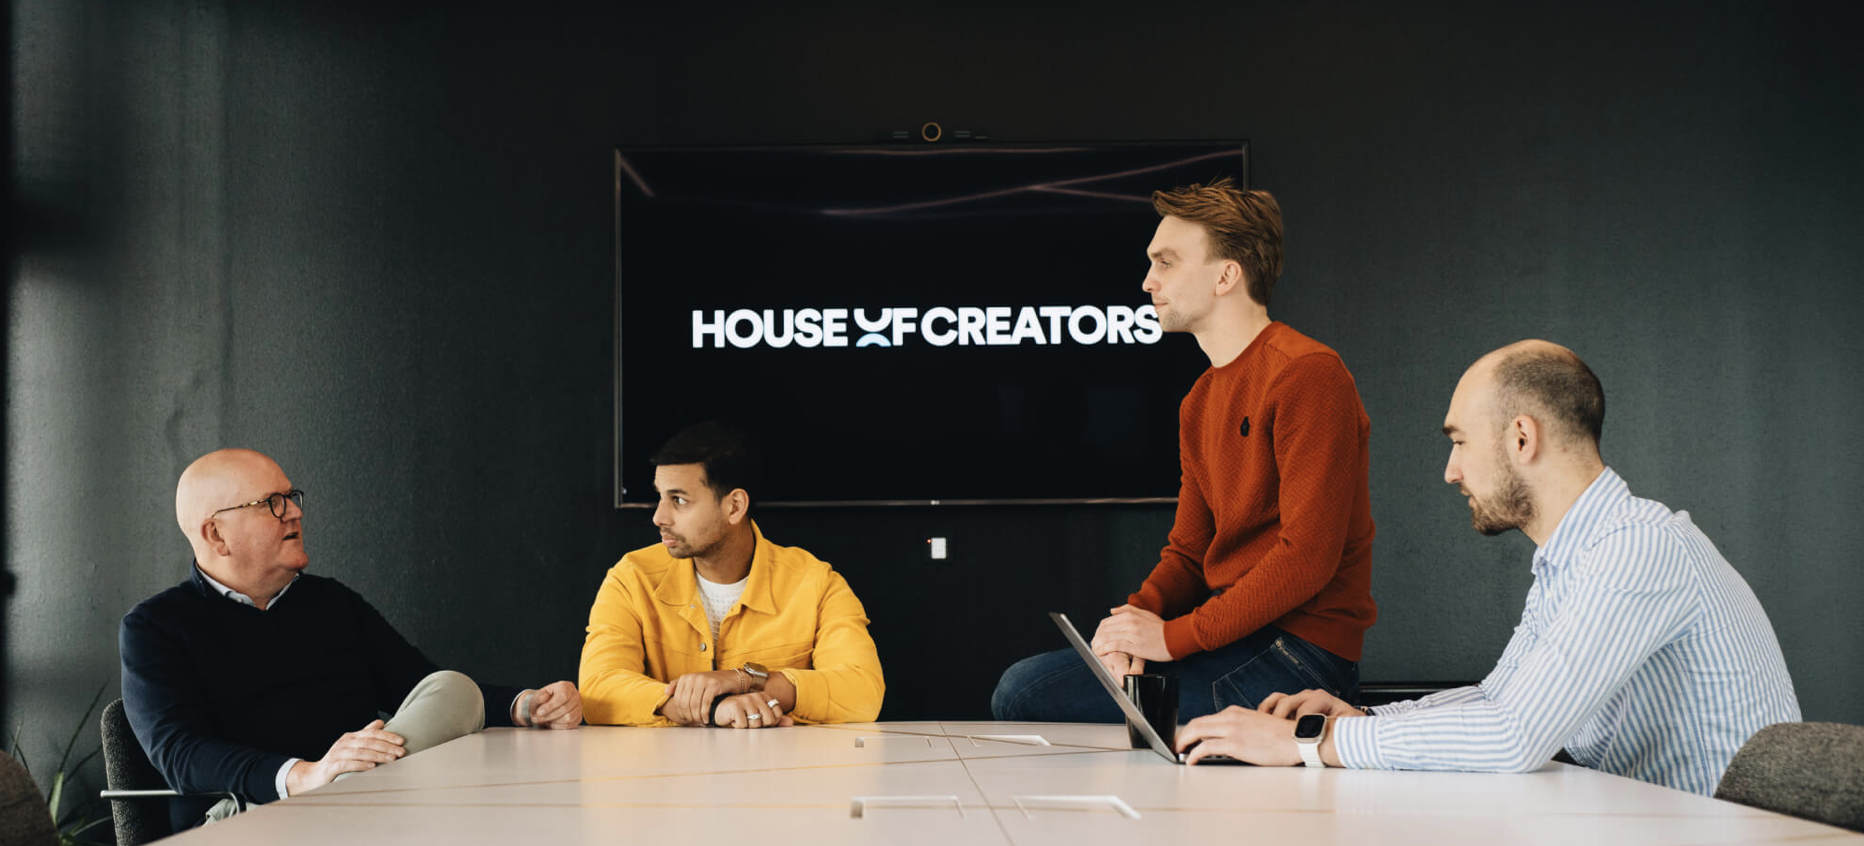 Kemari Digital en Tribe starten groep House of Creators 